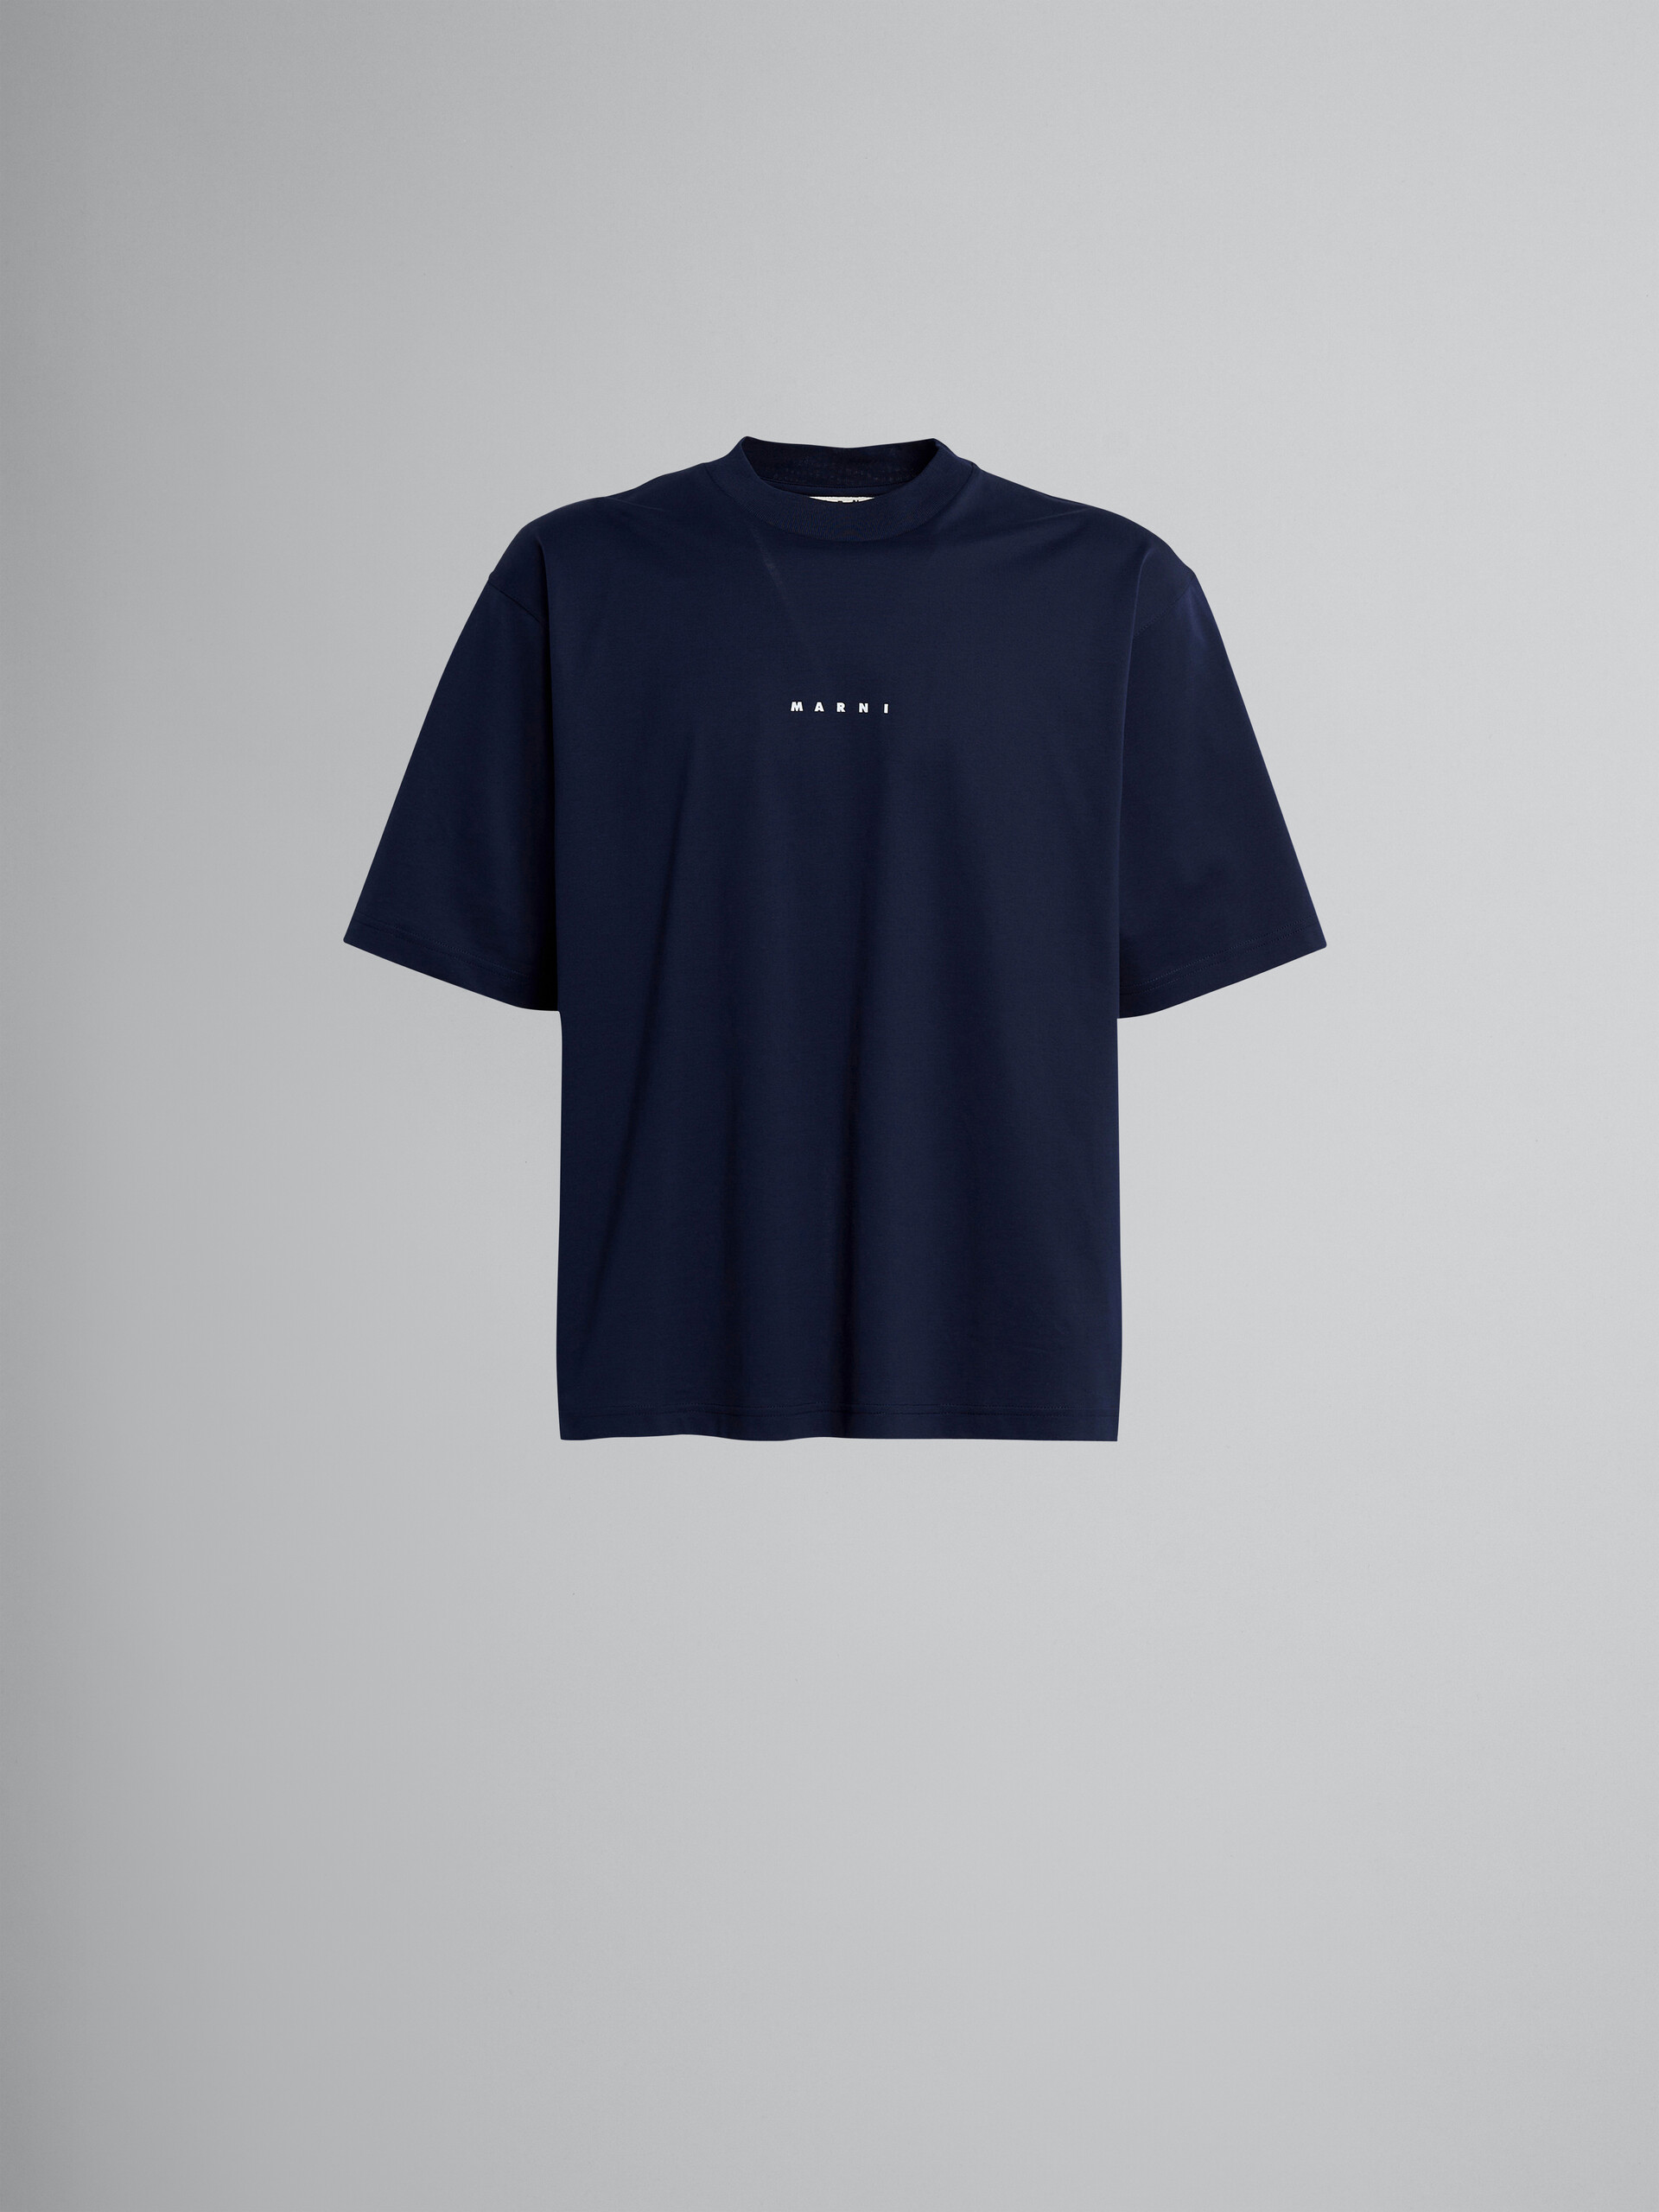 新品 50 20aw MARNI ロゴ Tシャツ ブラウン ベージュ 9888トップス